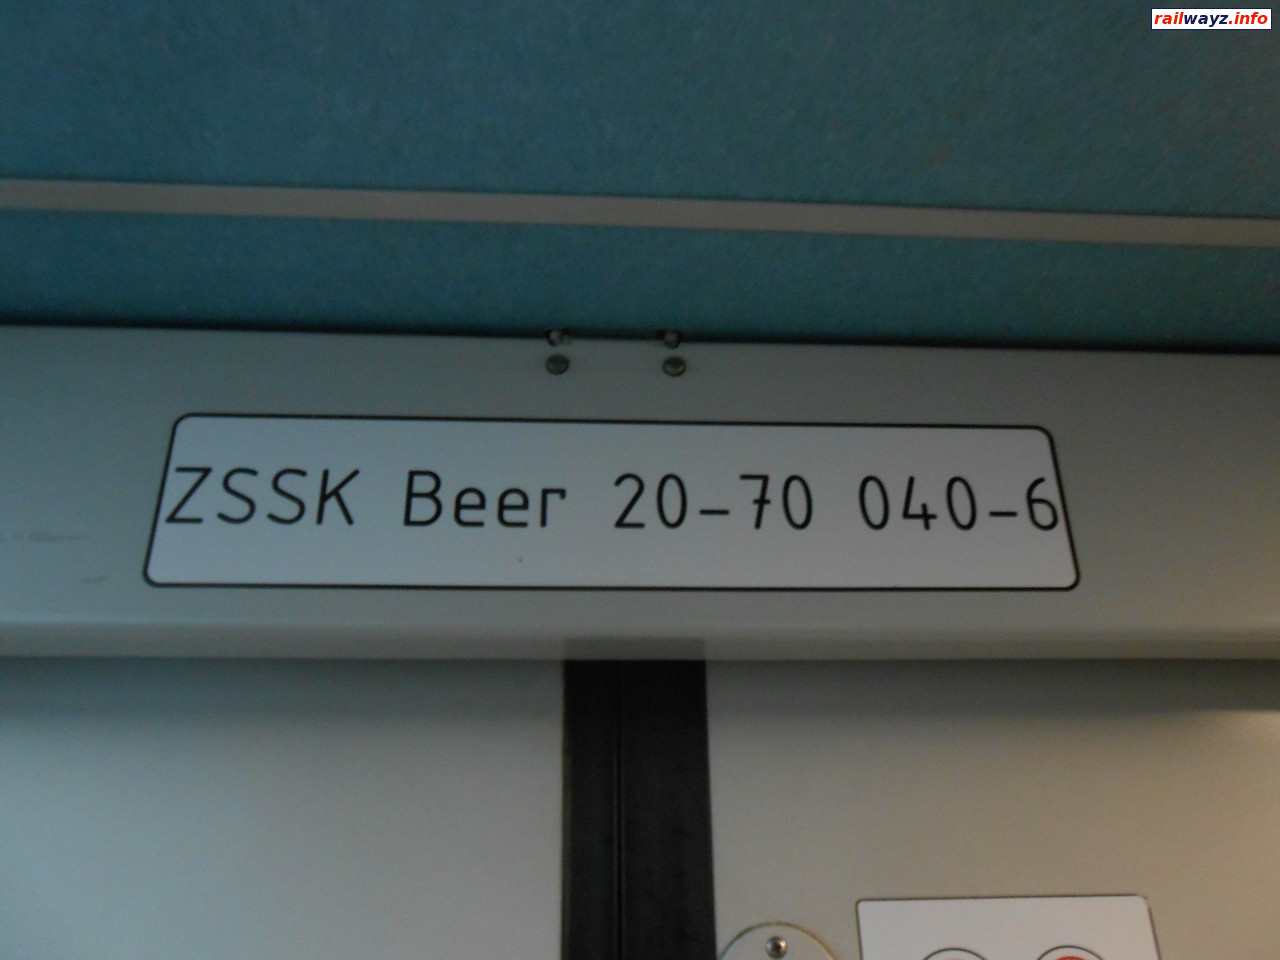 Табличка с номером вагона в поезде Прага - Кошице